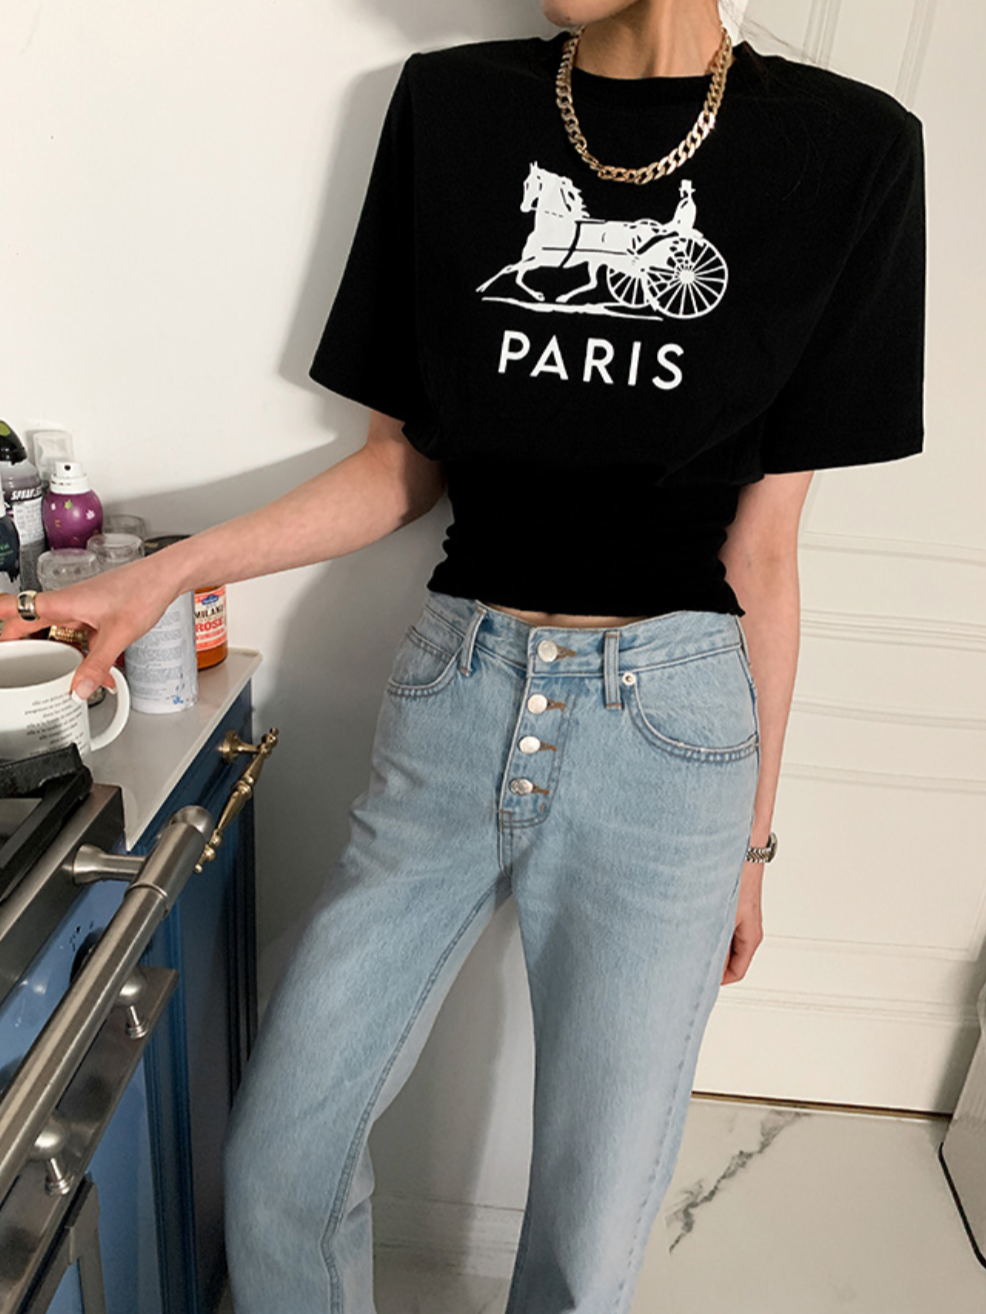 PARISデザインTシャツ CPA42009